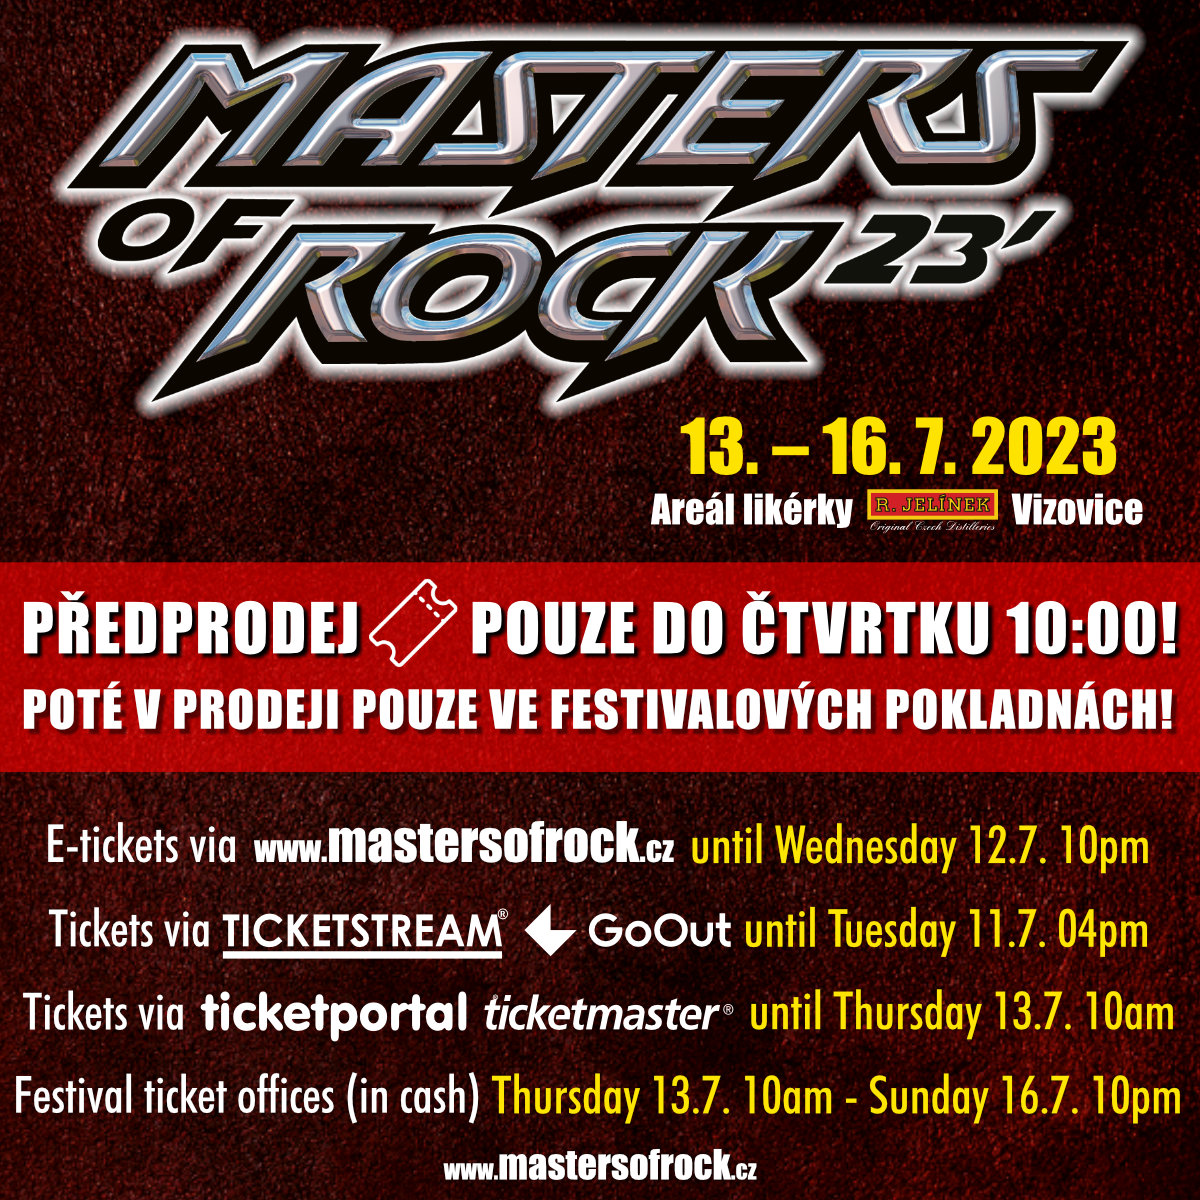 Festivalové i jednodenní vstupenky na MASTERS OF ROCK 2023 za